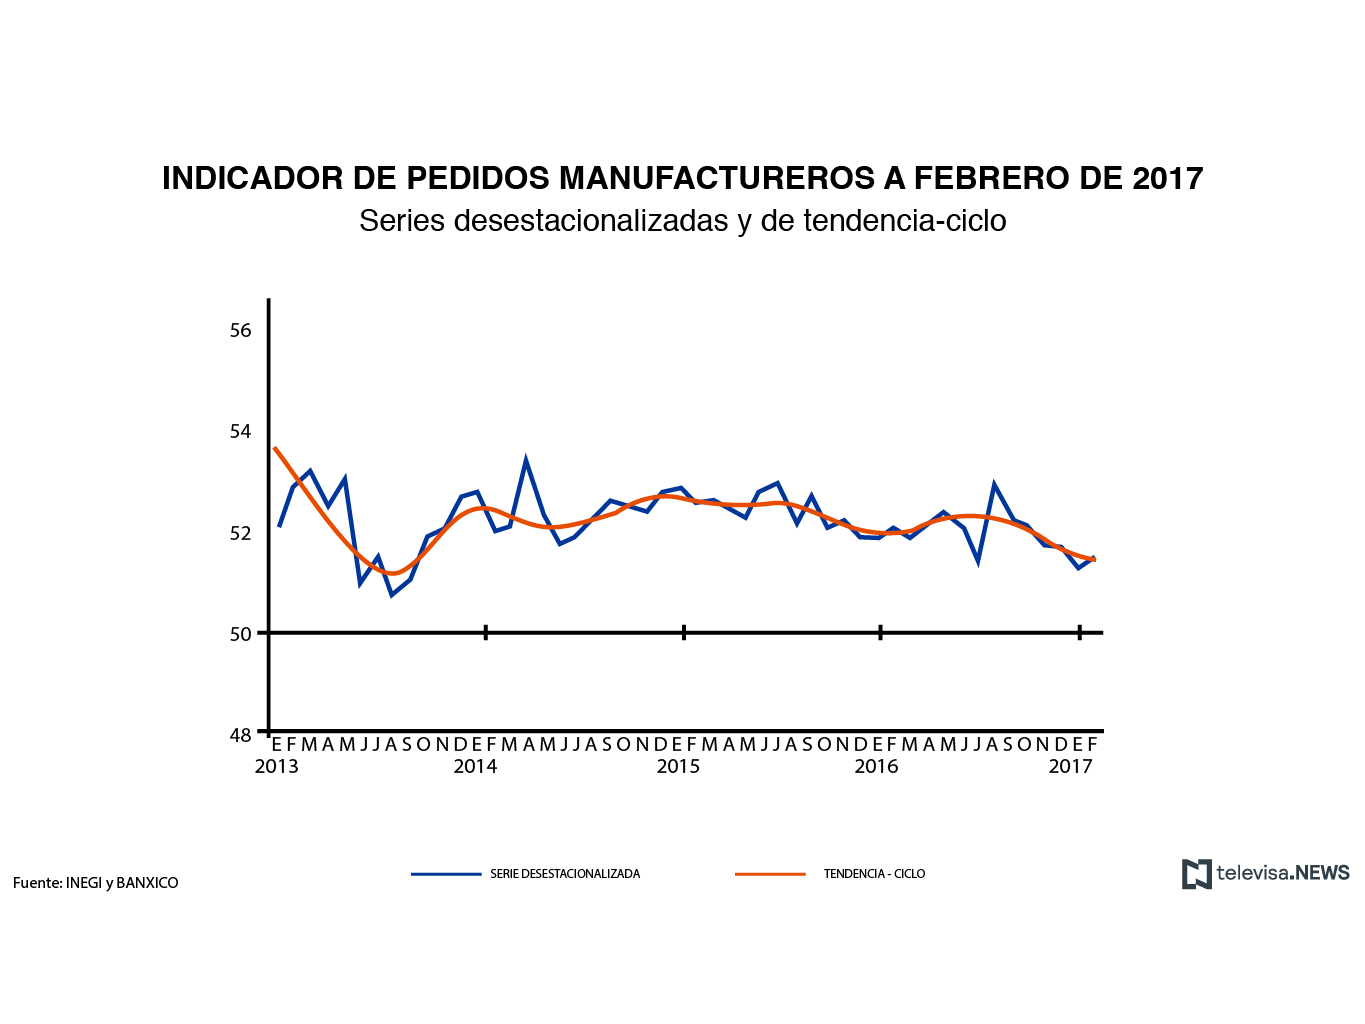 Los pedidos manufactureros registraron un incremento mensual de 0.22 puntos durante febrero